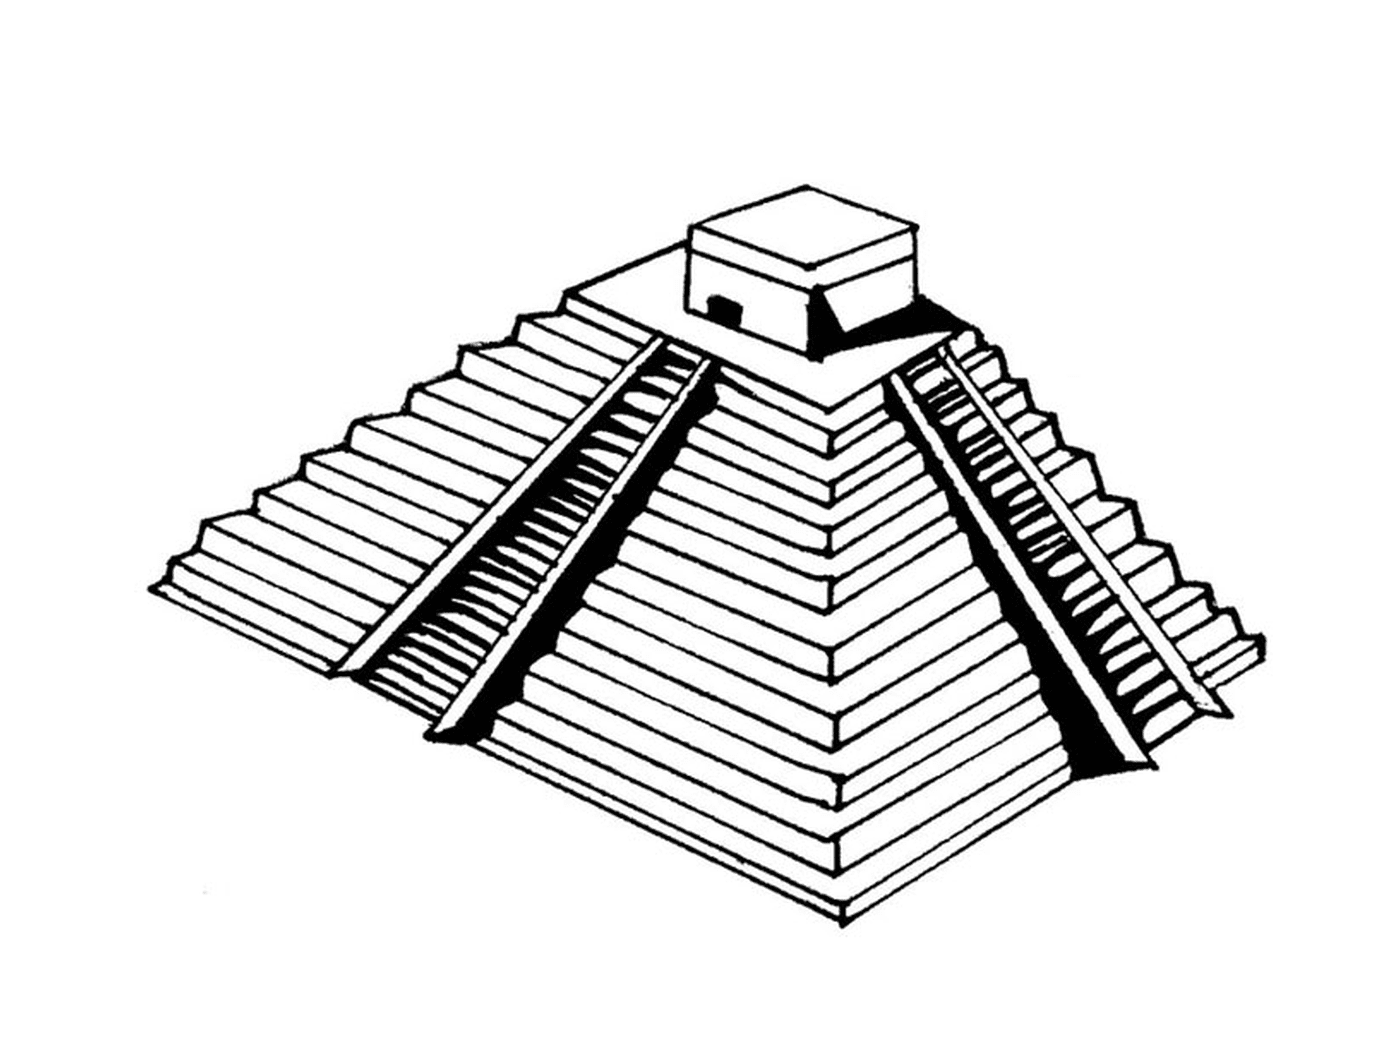  Pirámide con plataforma 